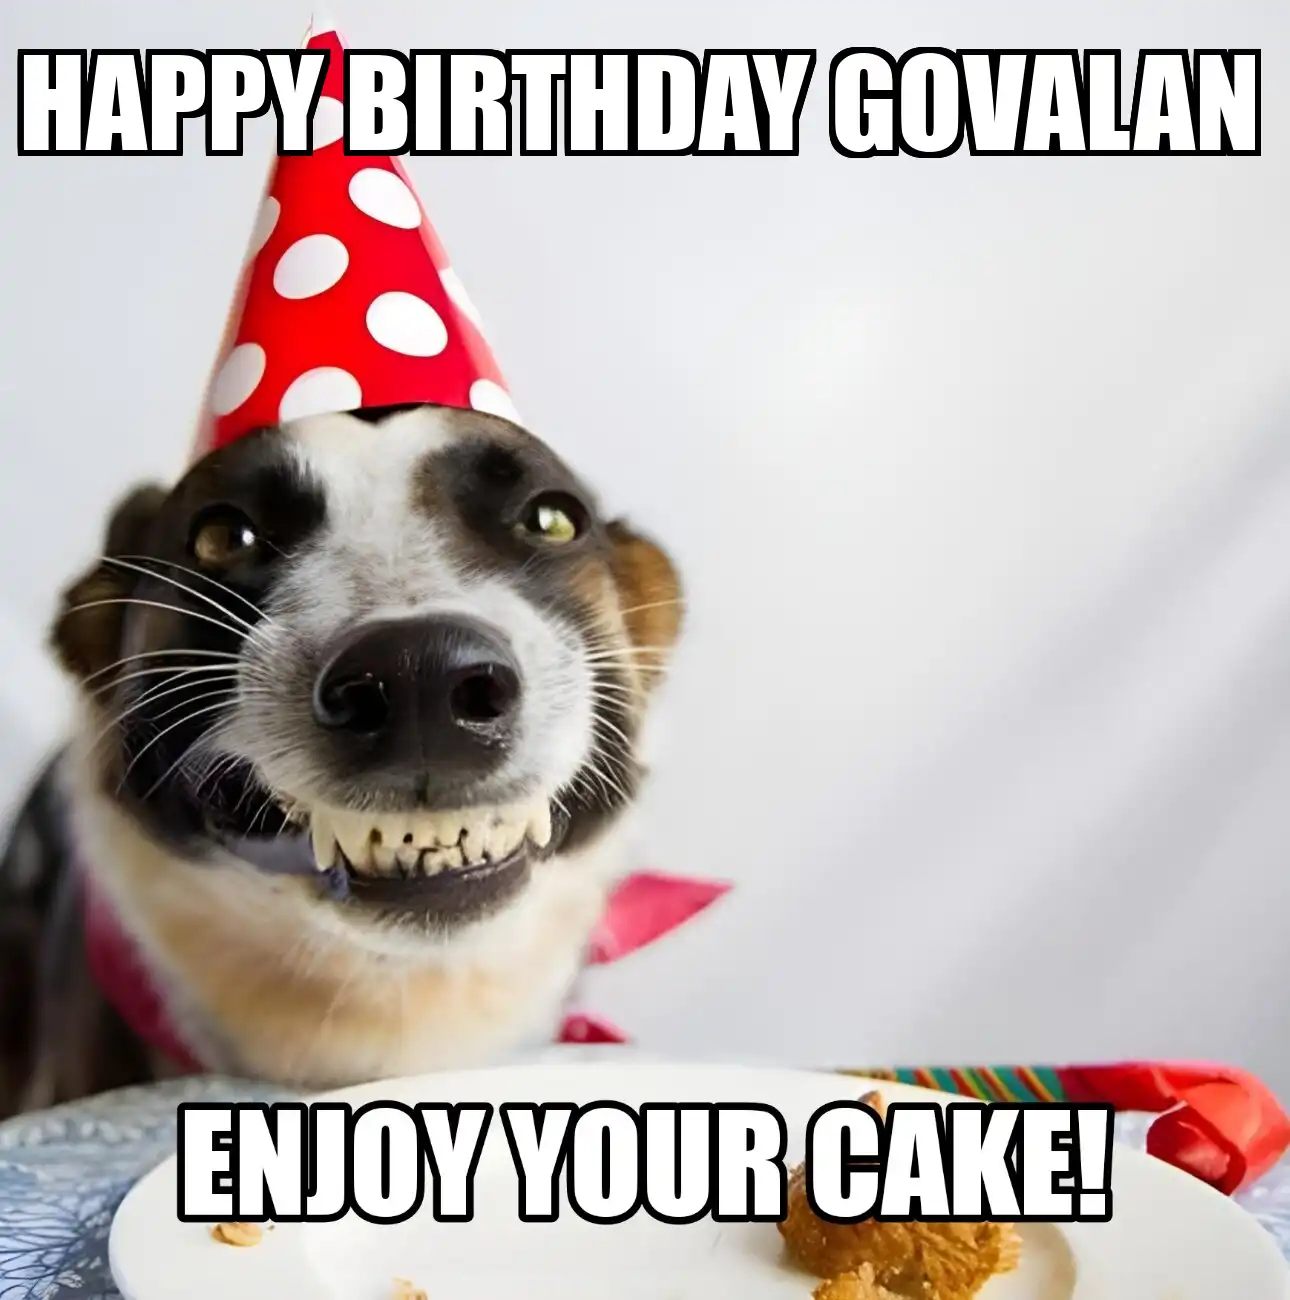 Happy Birthday Govalan Enjoy Your Cake Dog Meme